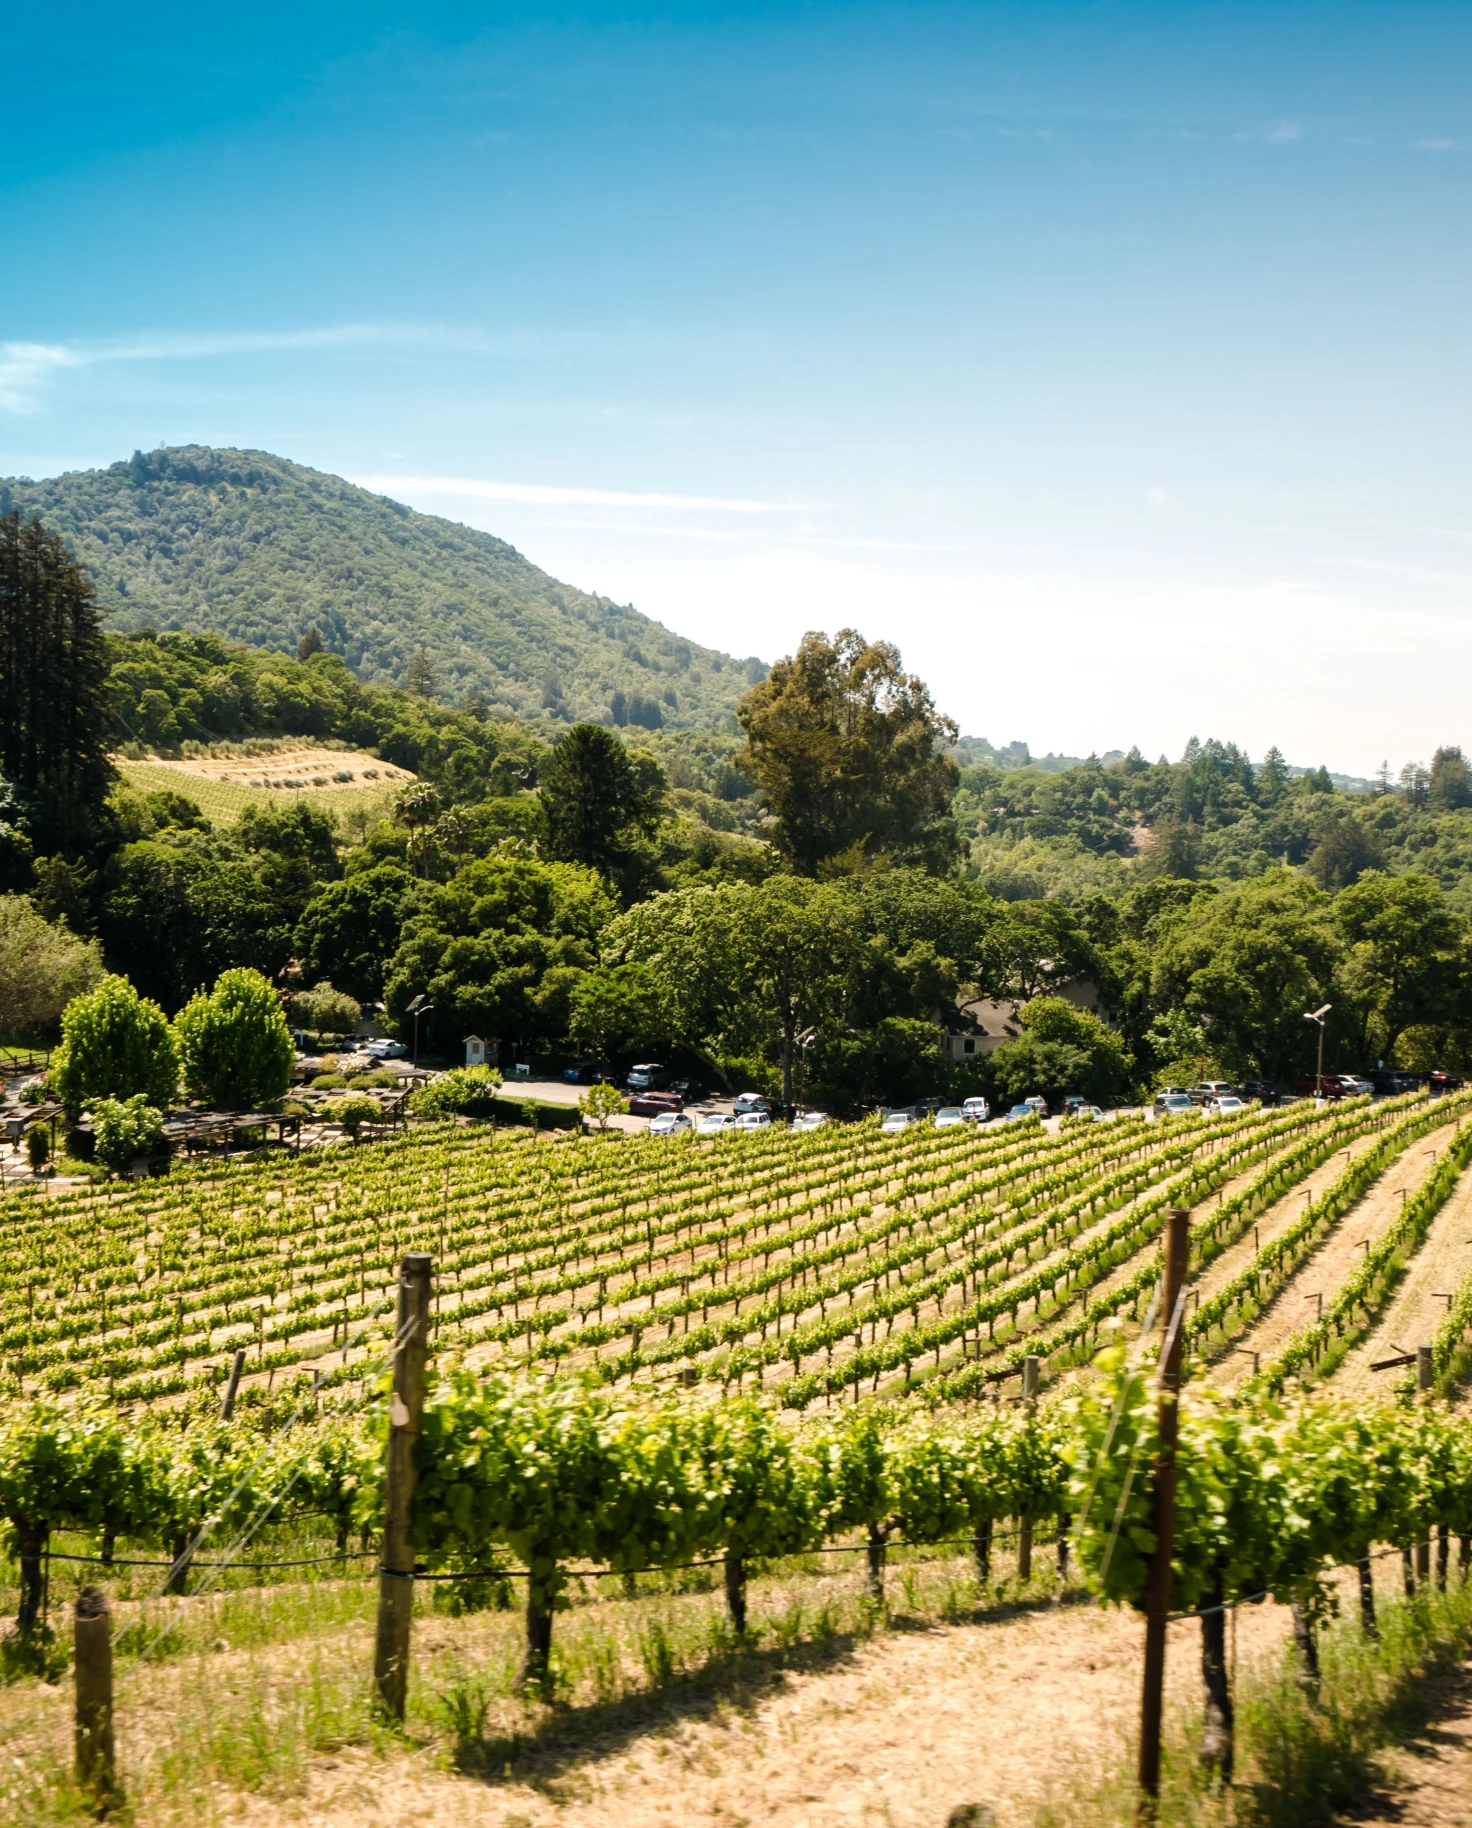 green vineyard during daytime